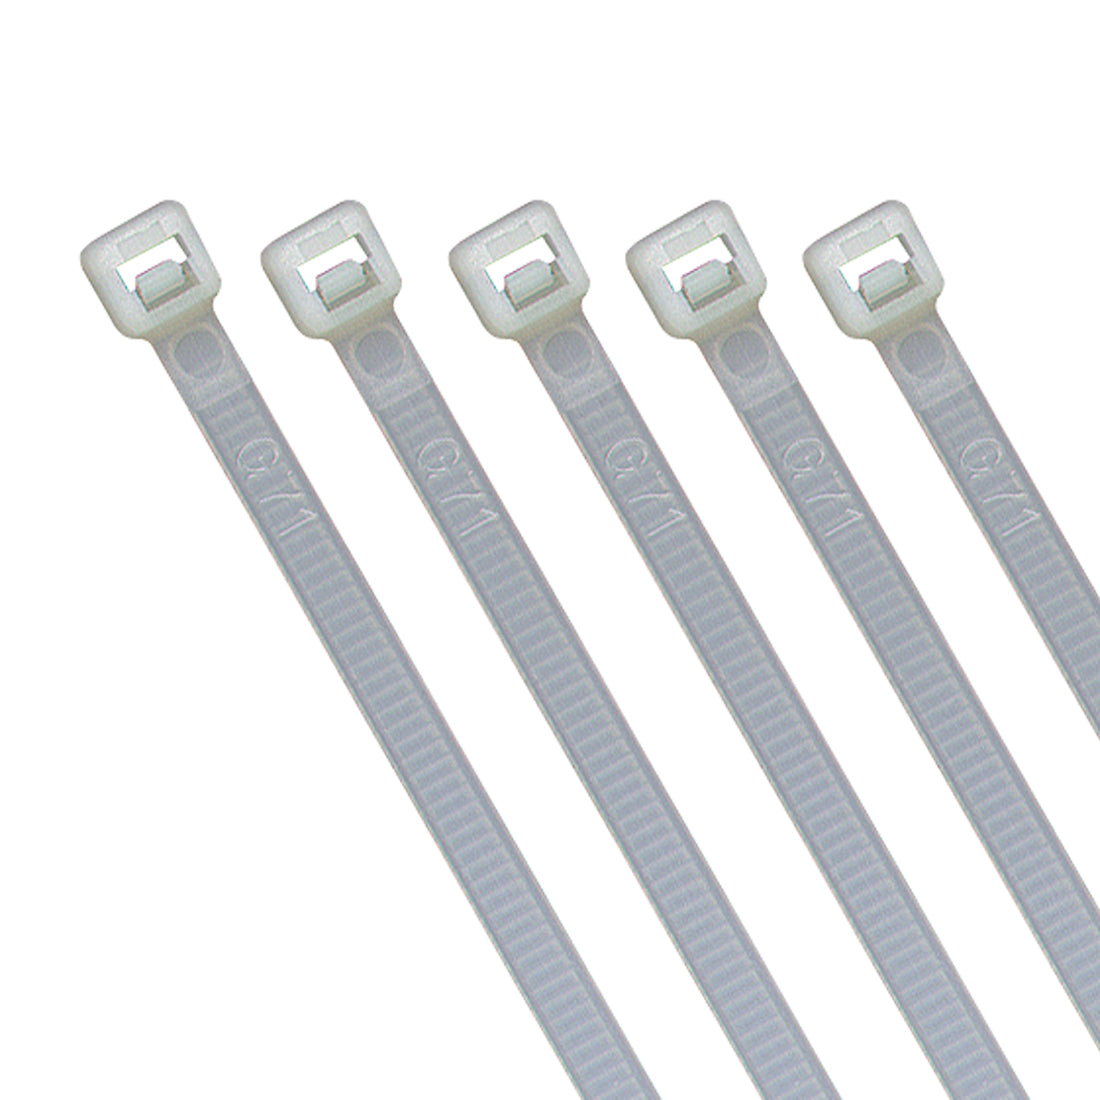 100x Profi-Kabelbinder Weiß, Nylon, UV-beständig, Brandschutz UL 94 V2,  verschiedene Größen